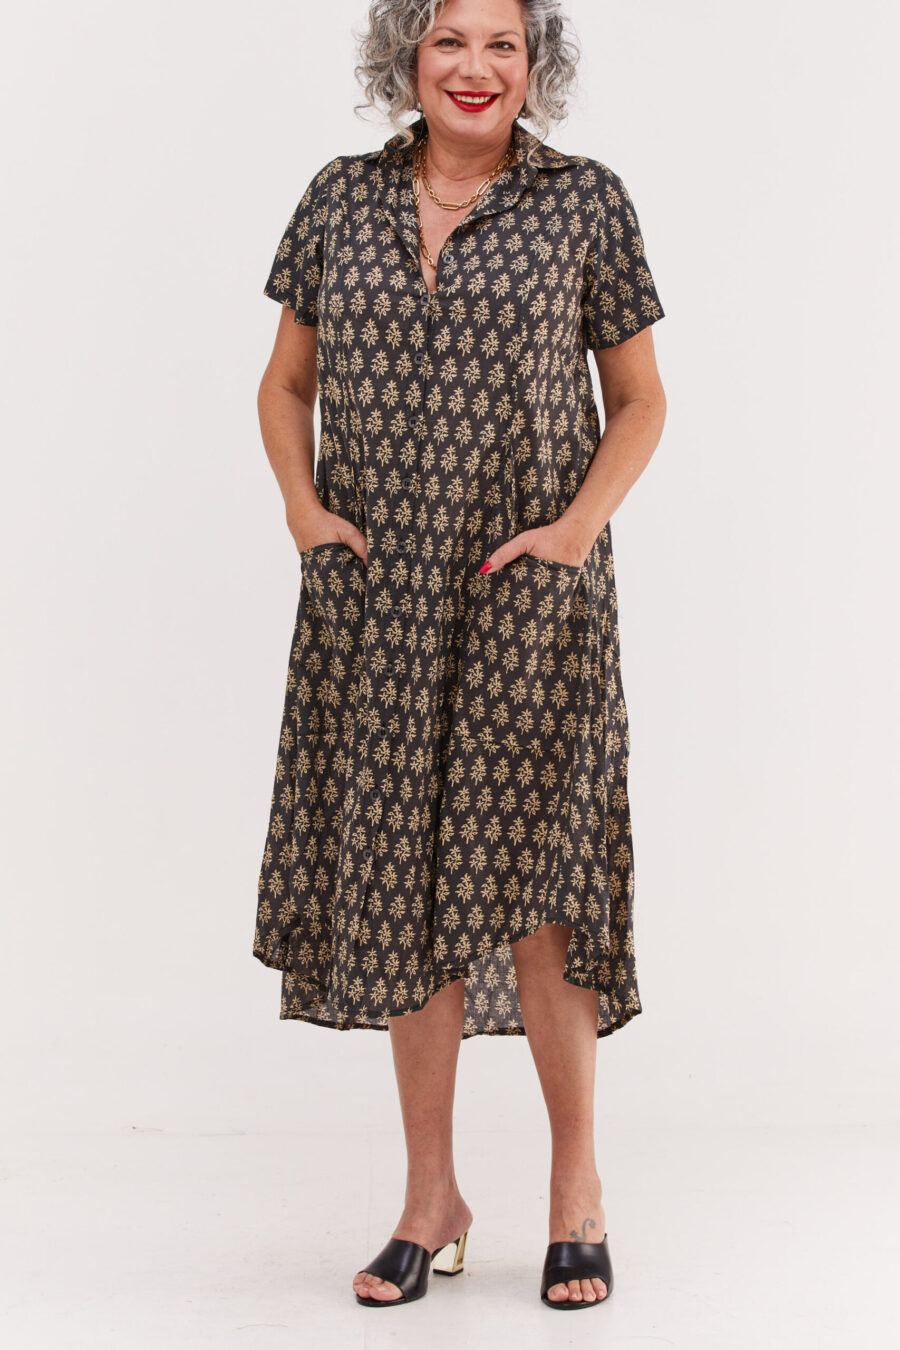 שמלת איה'לה | שמלת אוברסייז בעיצוב ייחודי – הדפס טוקיו שמלה בצבע שחור עם הדפס אוריינטלי בצבע שמנת